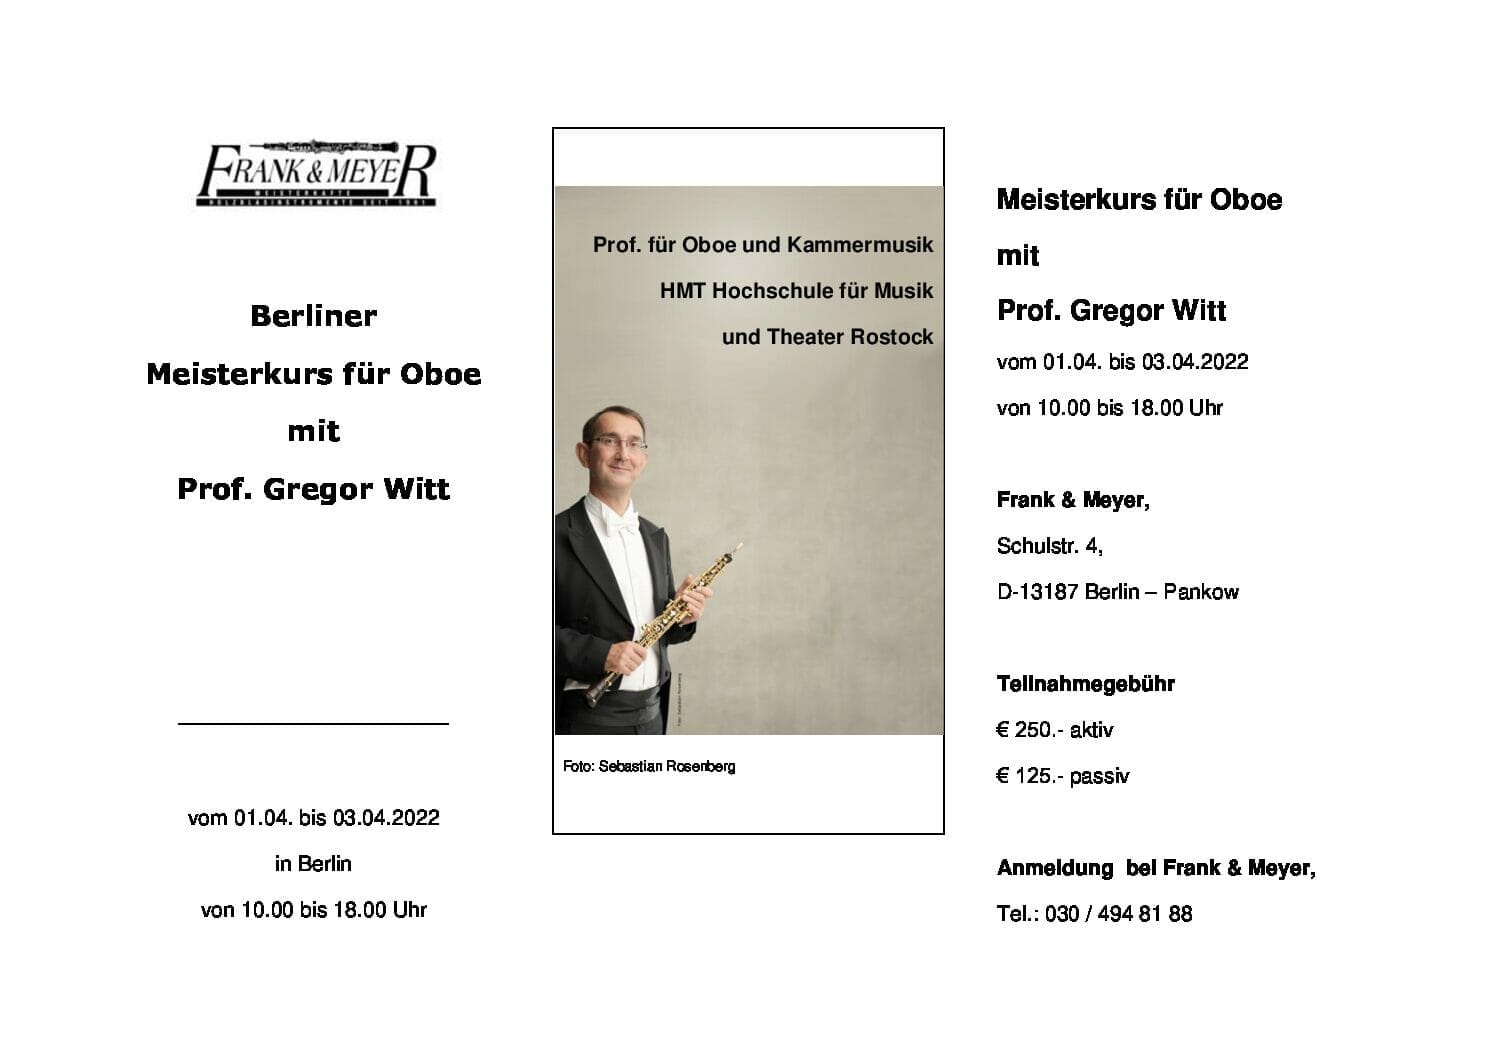 Meisterkurs für Oboe mit Prof. Gregor Witt